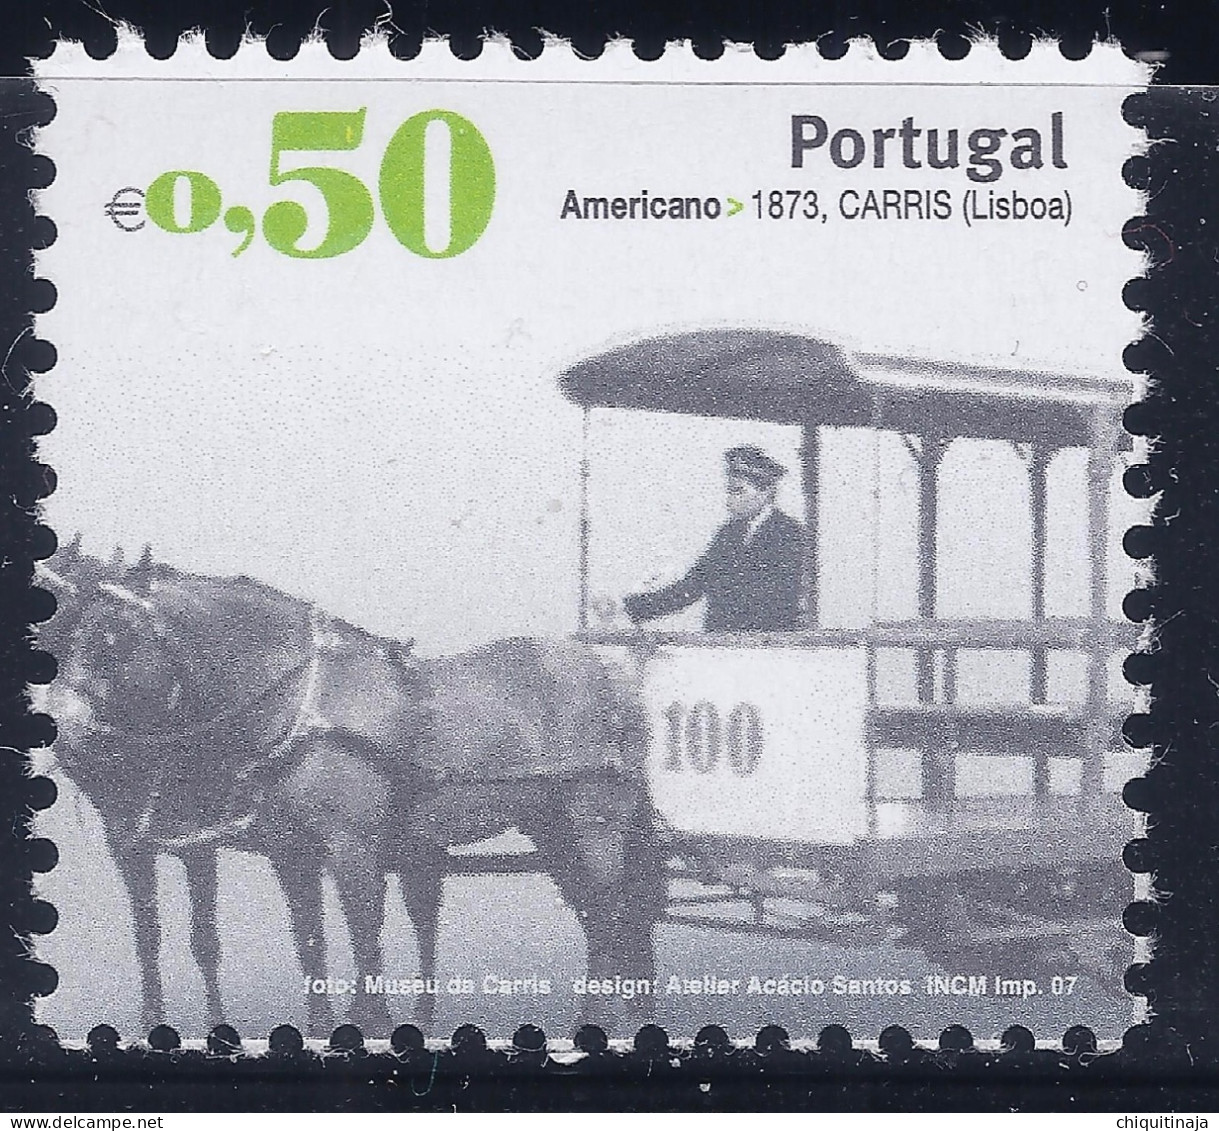 Portugal 2007 “Transportes Urbanos” MNH/** - Neufs